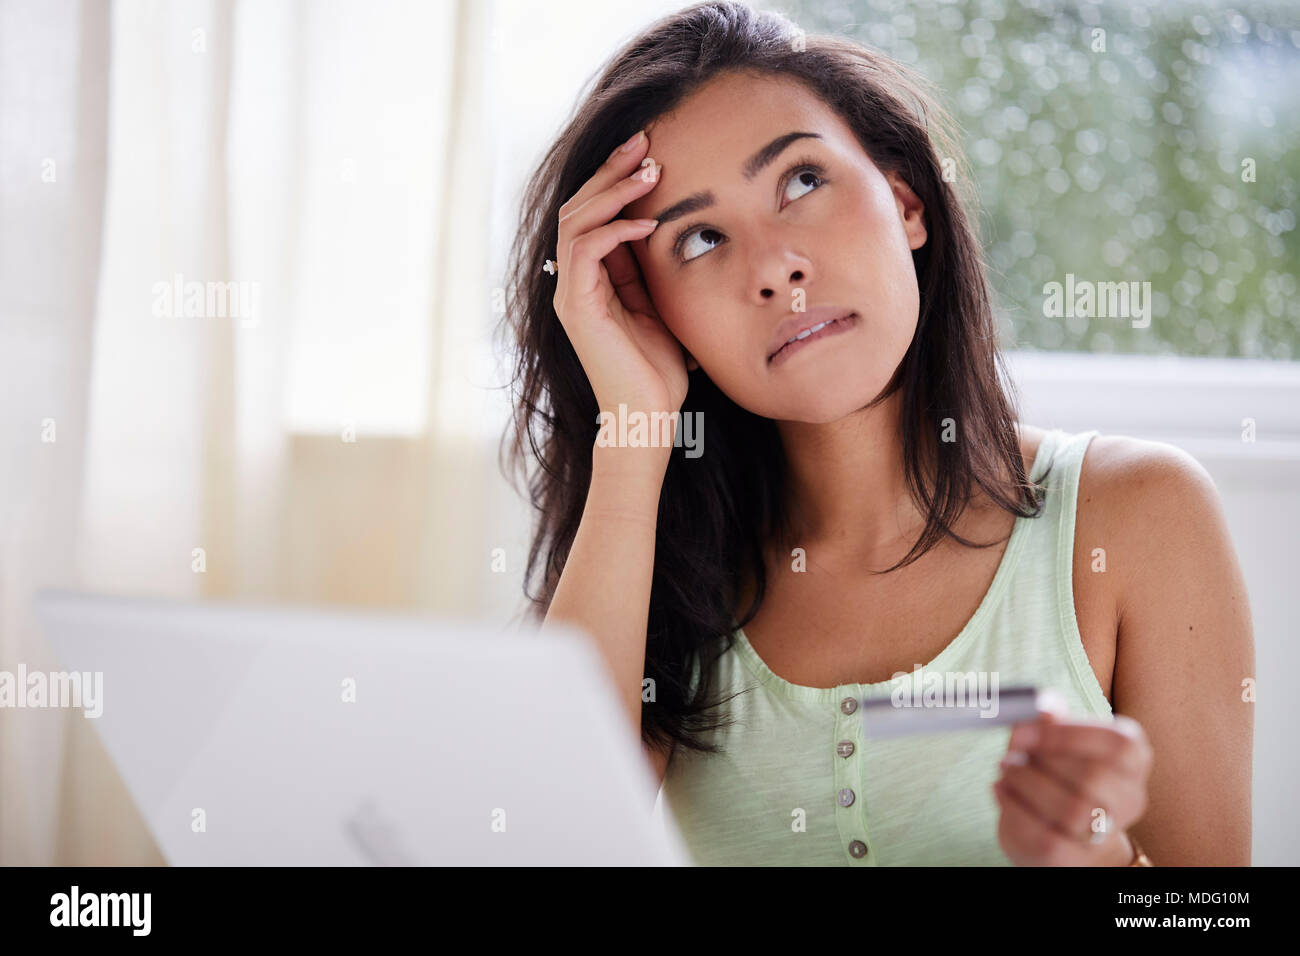 Girl shopping en ligne en utilisant sa carte de crédit Banque D'Images